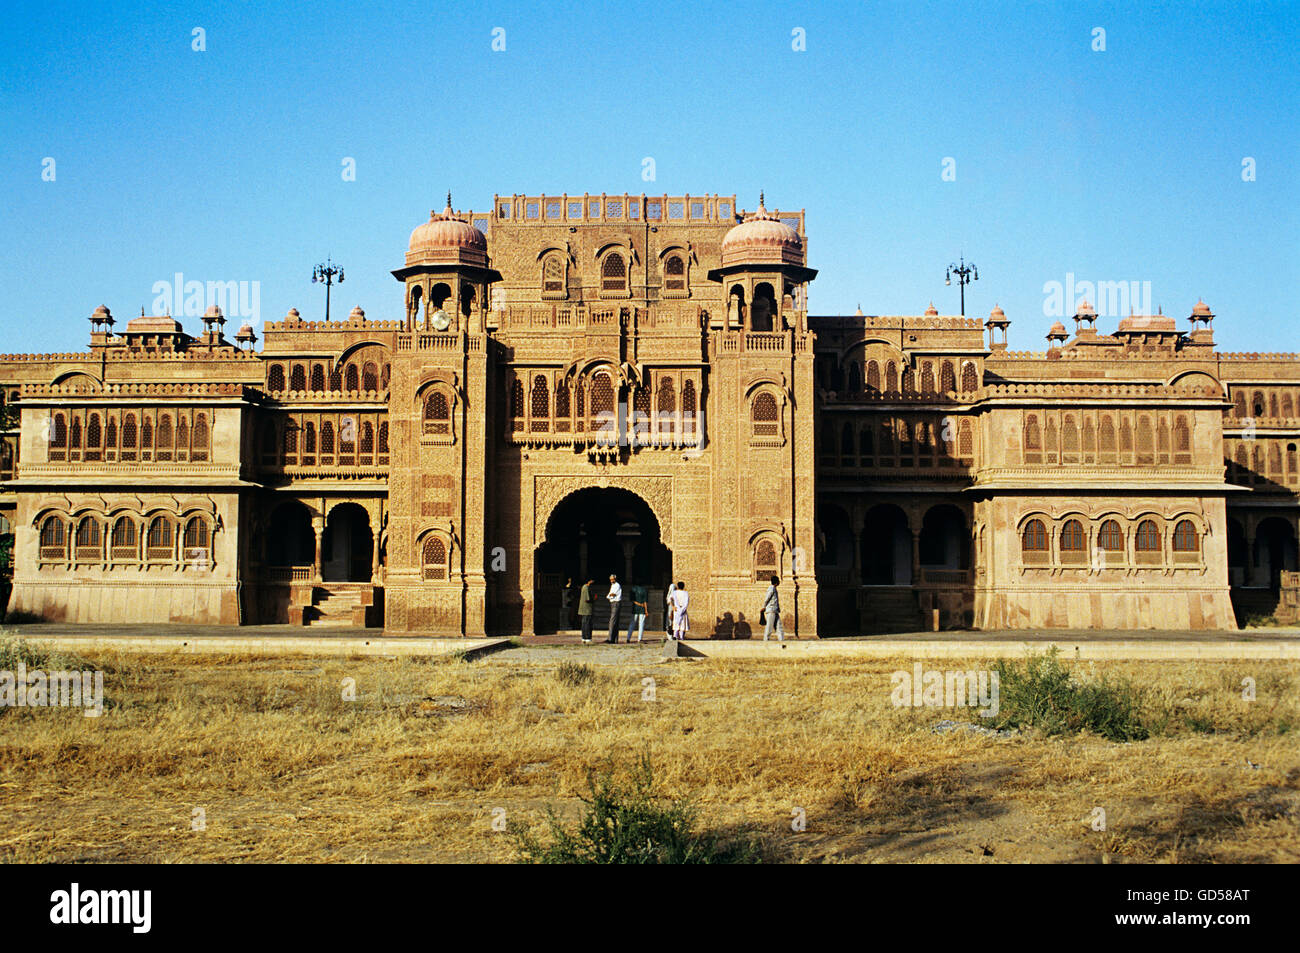 Lalgarh Palace Stock Photo